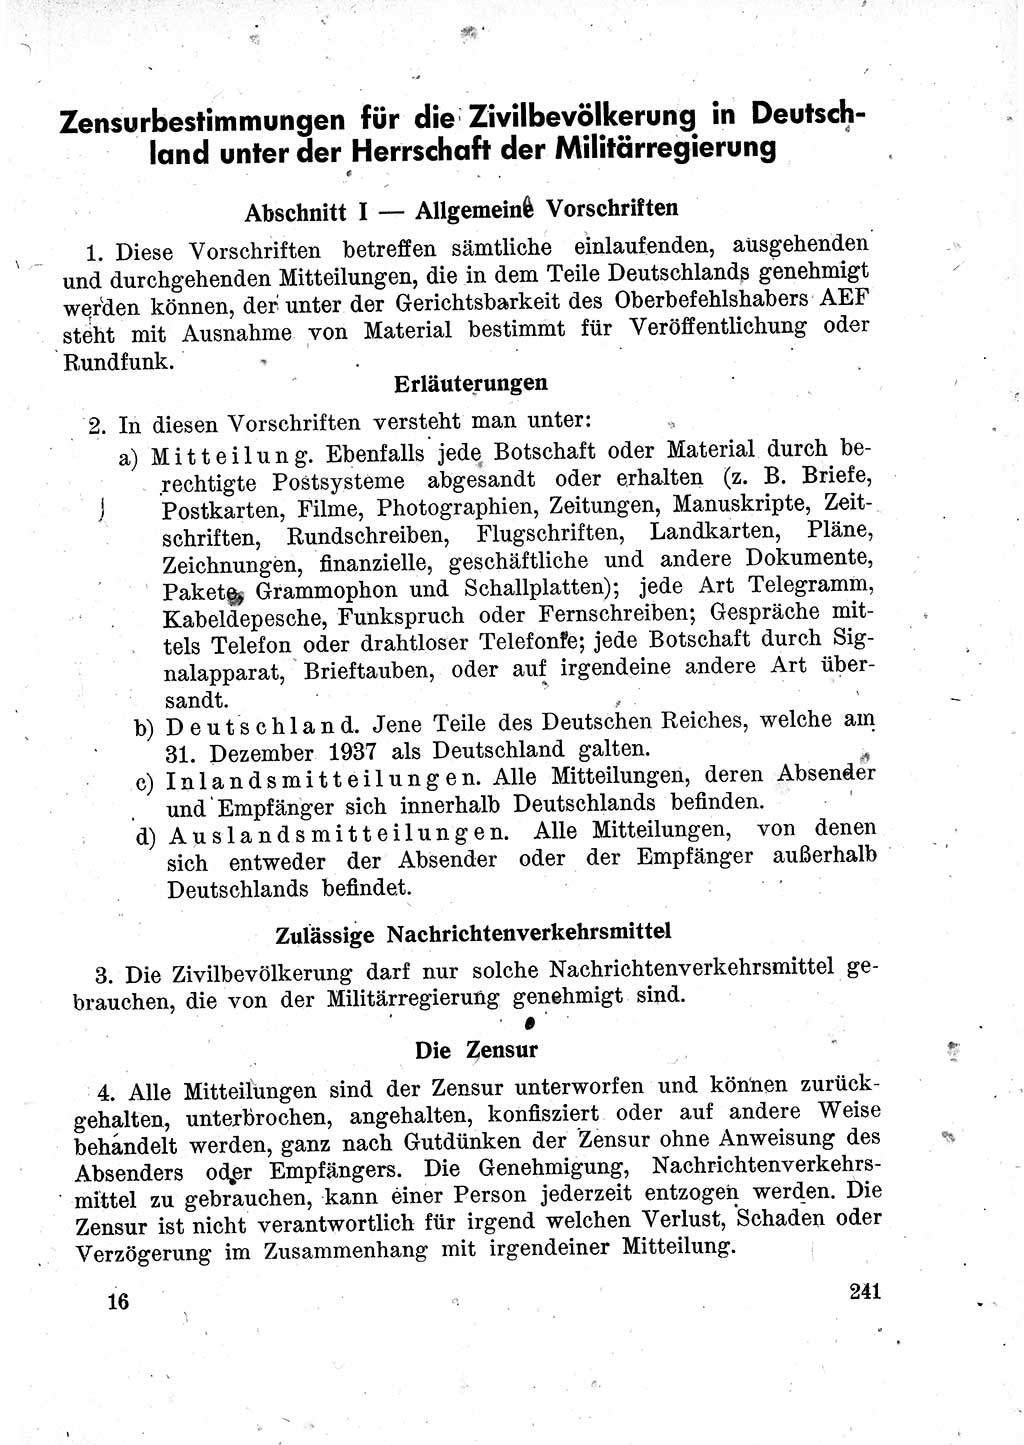 Das Recht der Besatzungsmacht (Deutschland), Proklamationen, Deklerationen, Verordnungen, Gesetze und Bekanntmachungen 1947, Seite 241 (R. Bes. Dtl. 1947, S. 241)